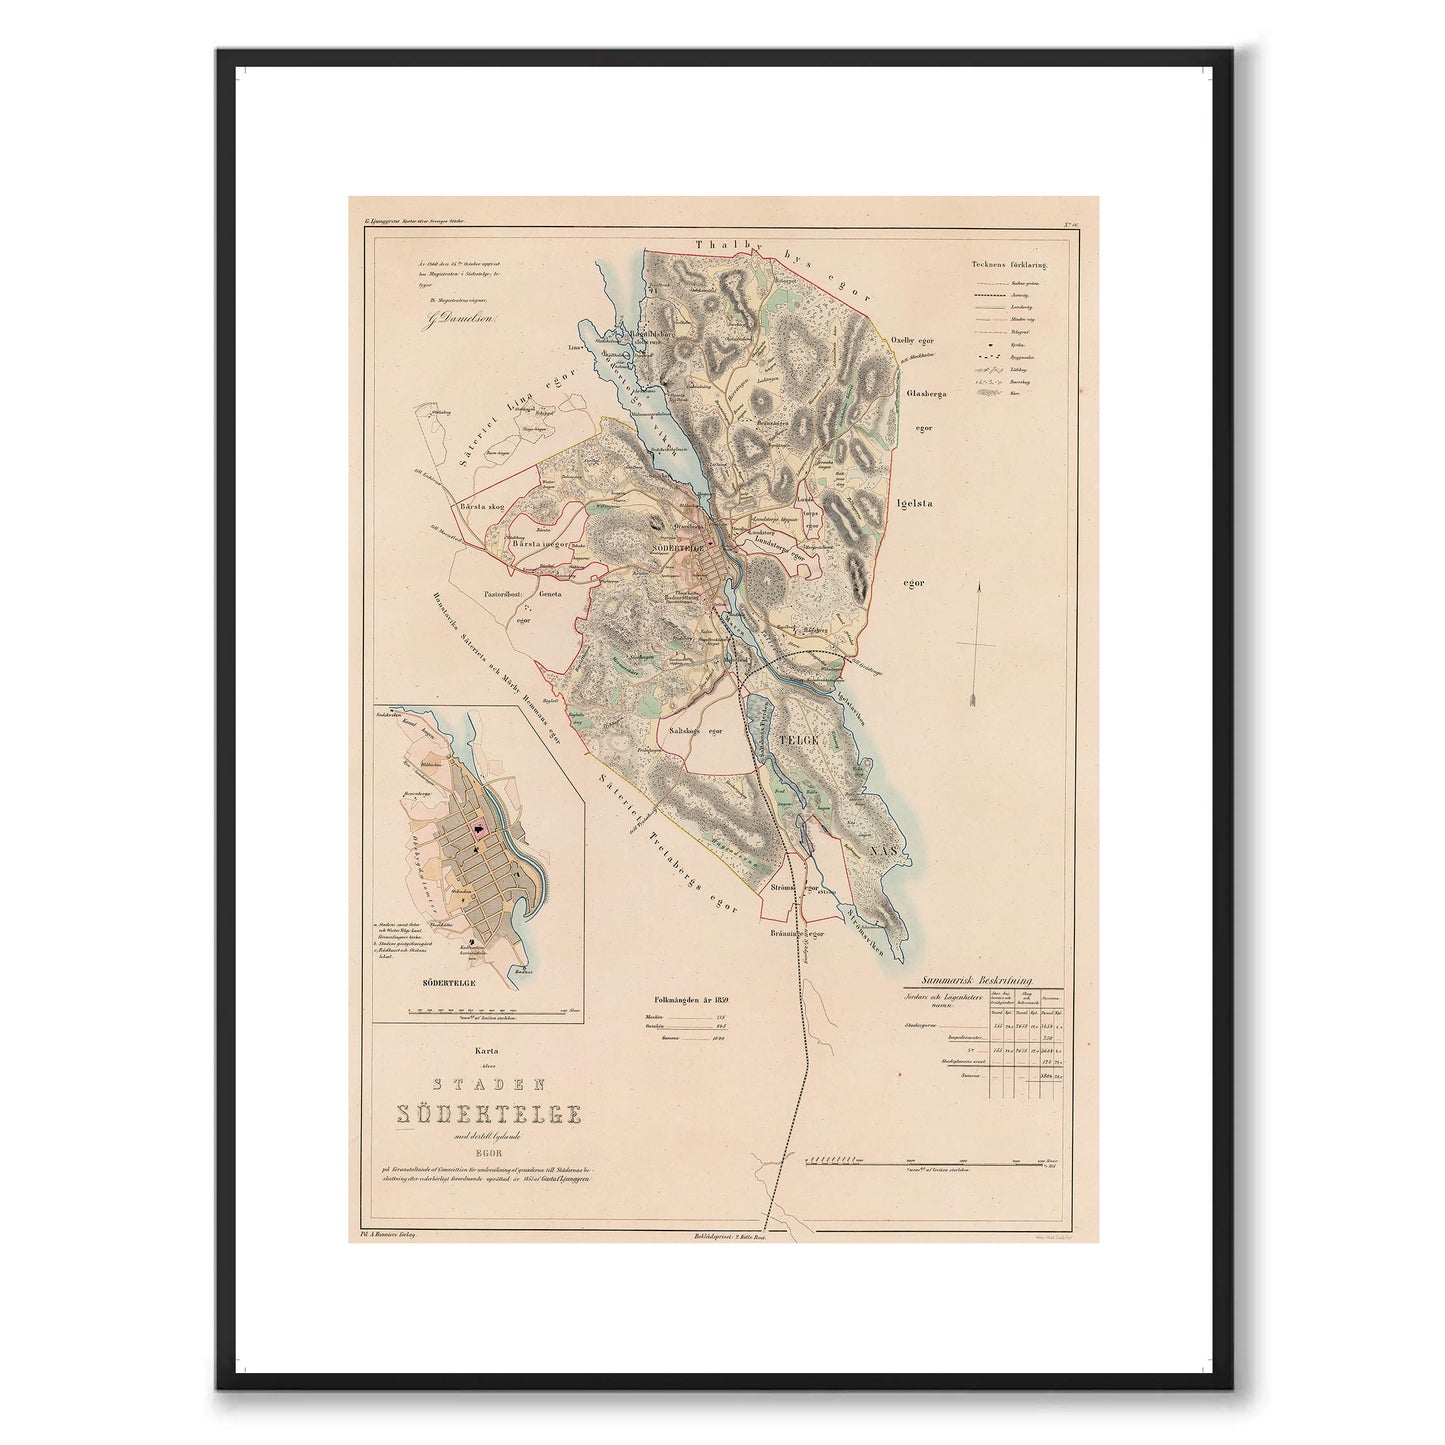 Poster med reproduktion av historisk karta över Södertälje från Ljunggrens klassiska atlas. 